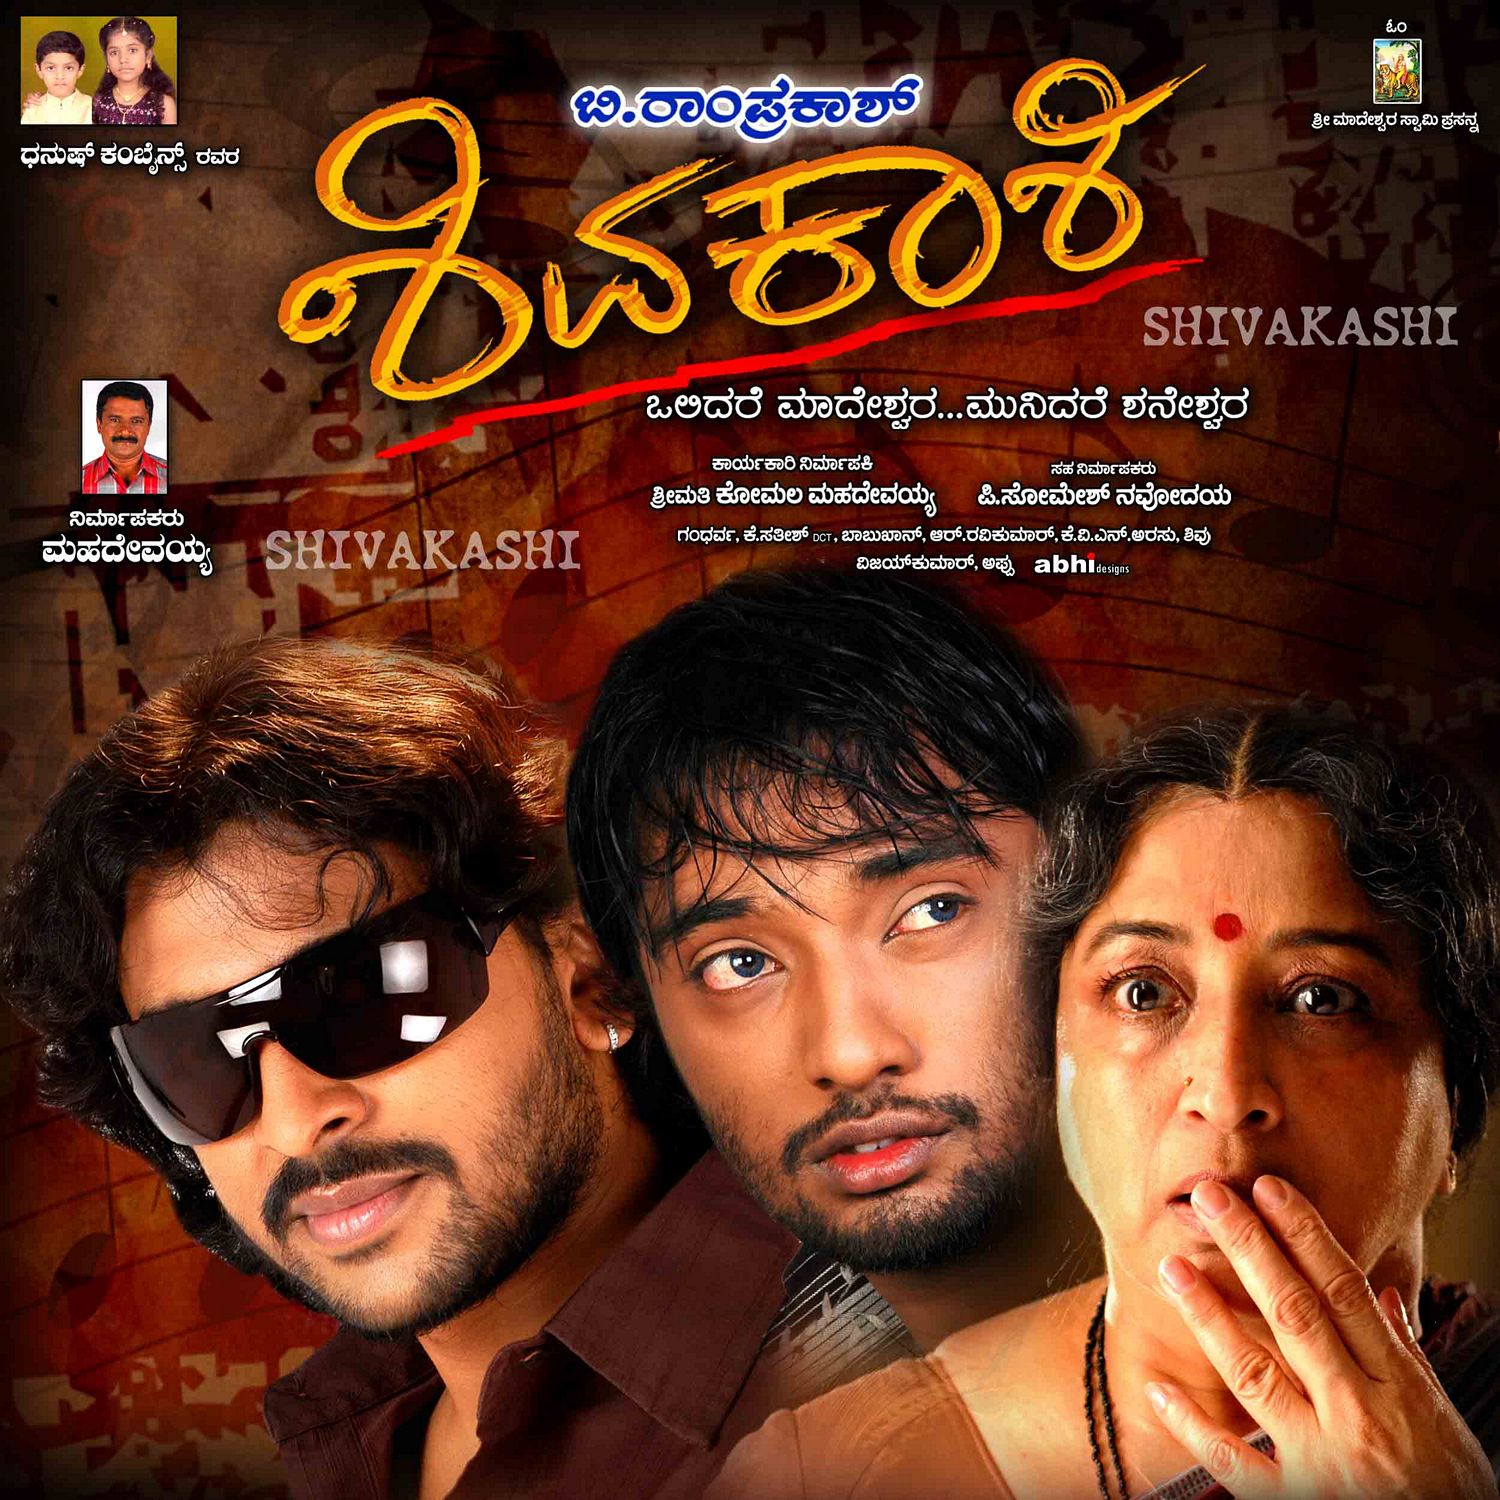 Extra Large Movie Poster Image for Shivakashi (#4 of 13)